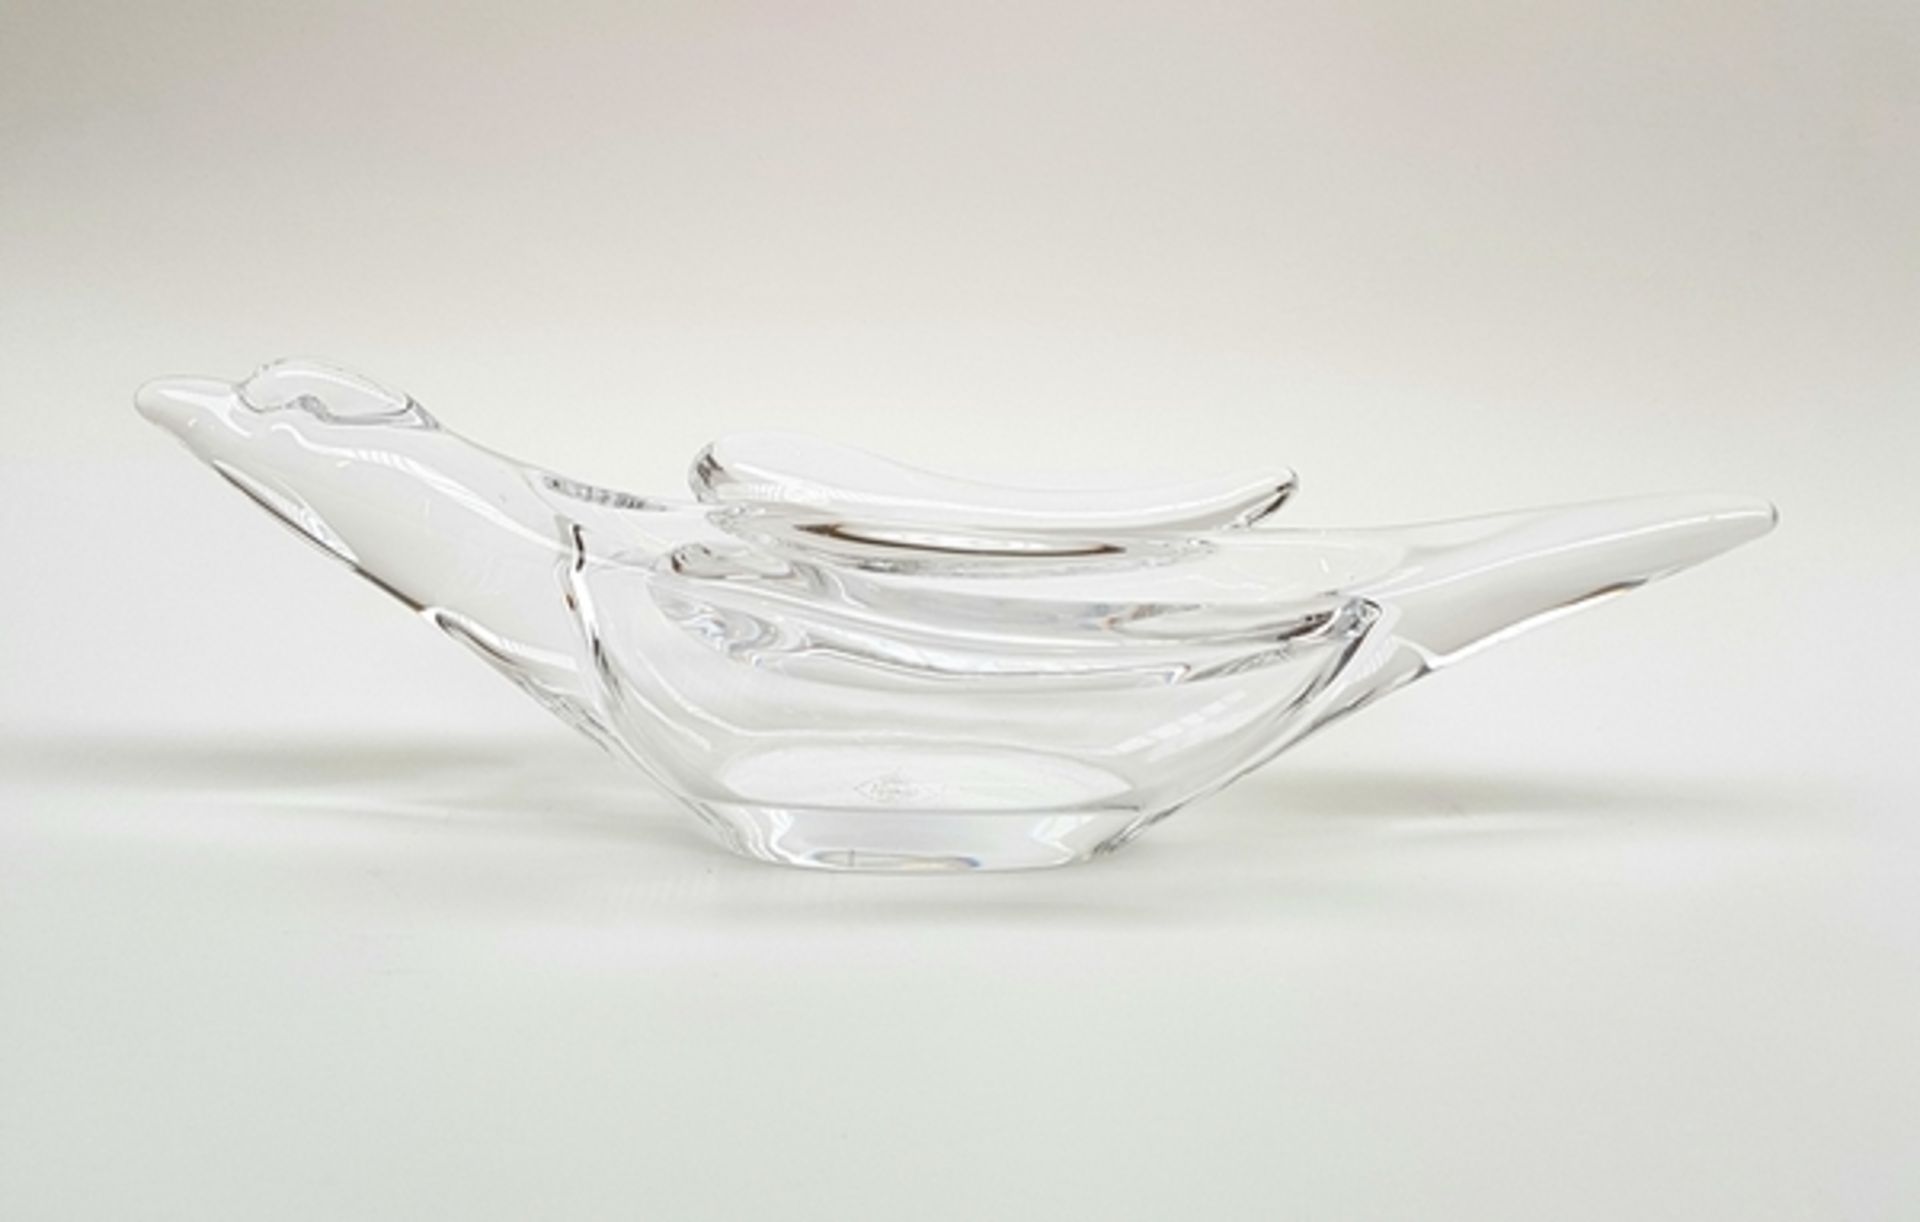 (Design) Glazen vogel Art Vannes FranceKristal glazen vogel Art Vannes France jaren 50. Conditie: